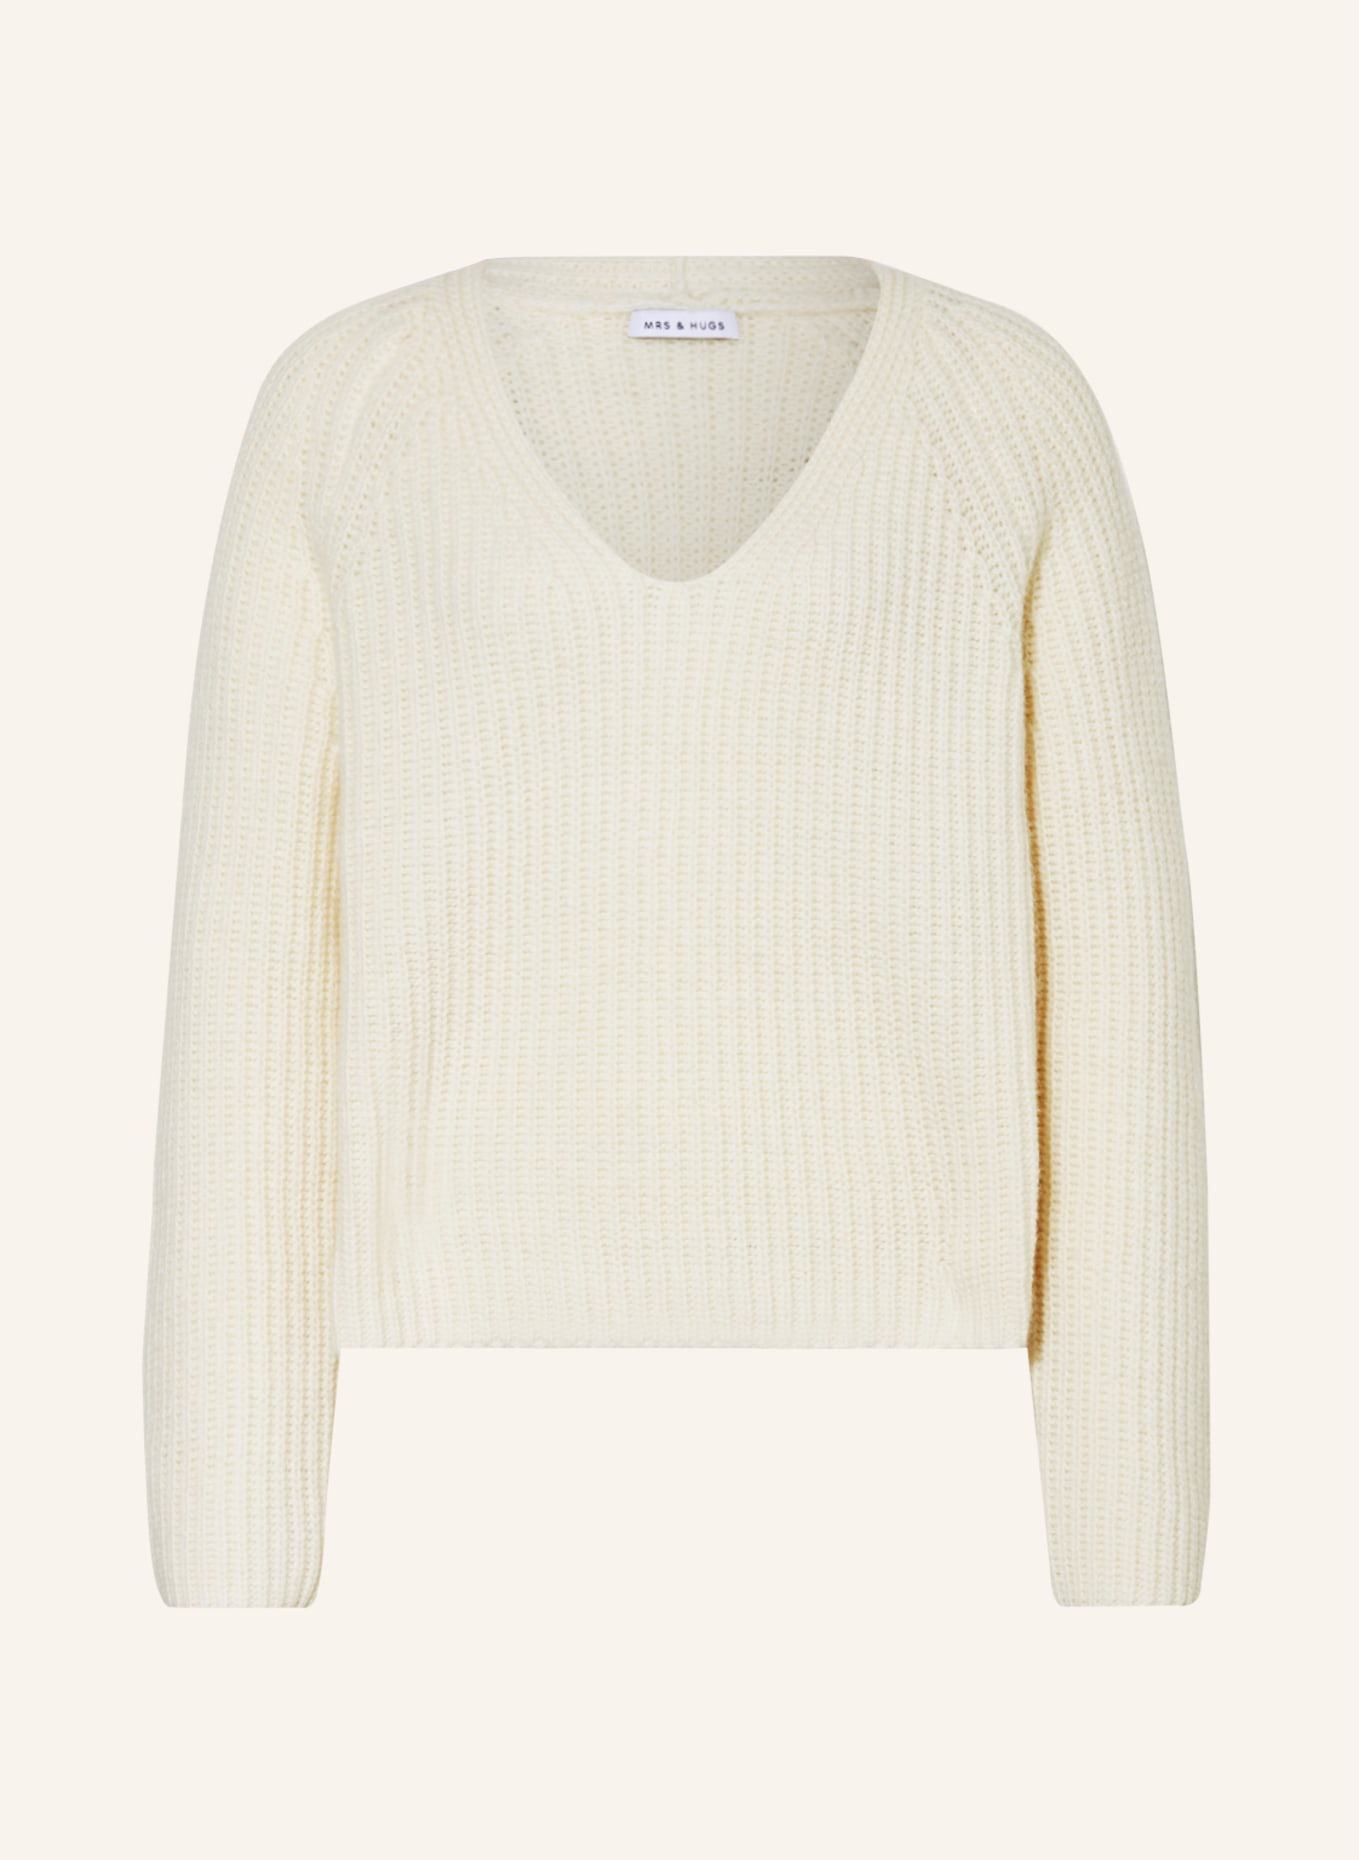 MRS & HUGS Sweater, Color: ECRU (Image 1)